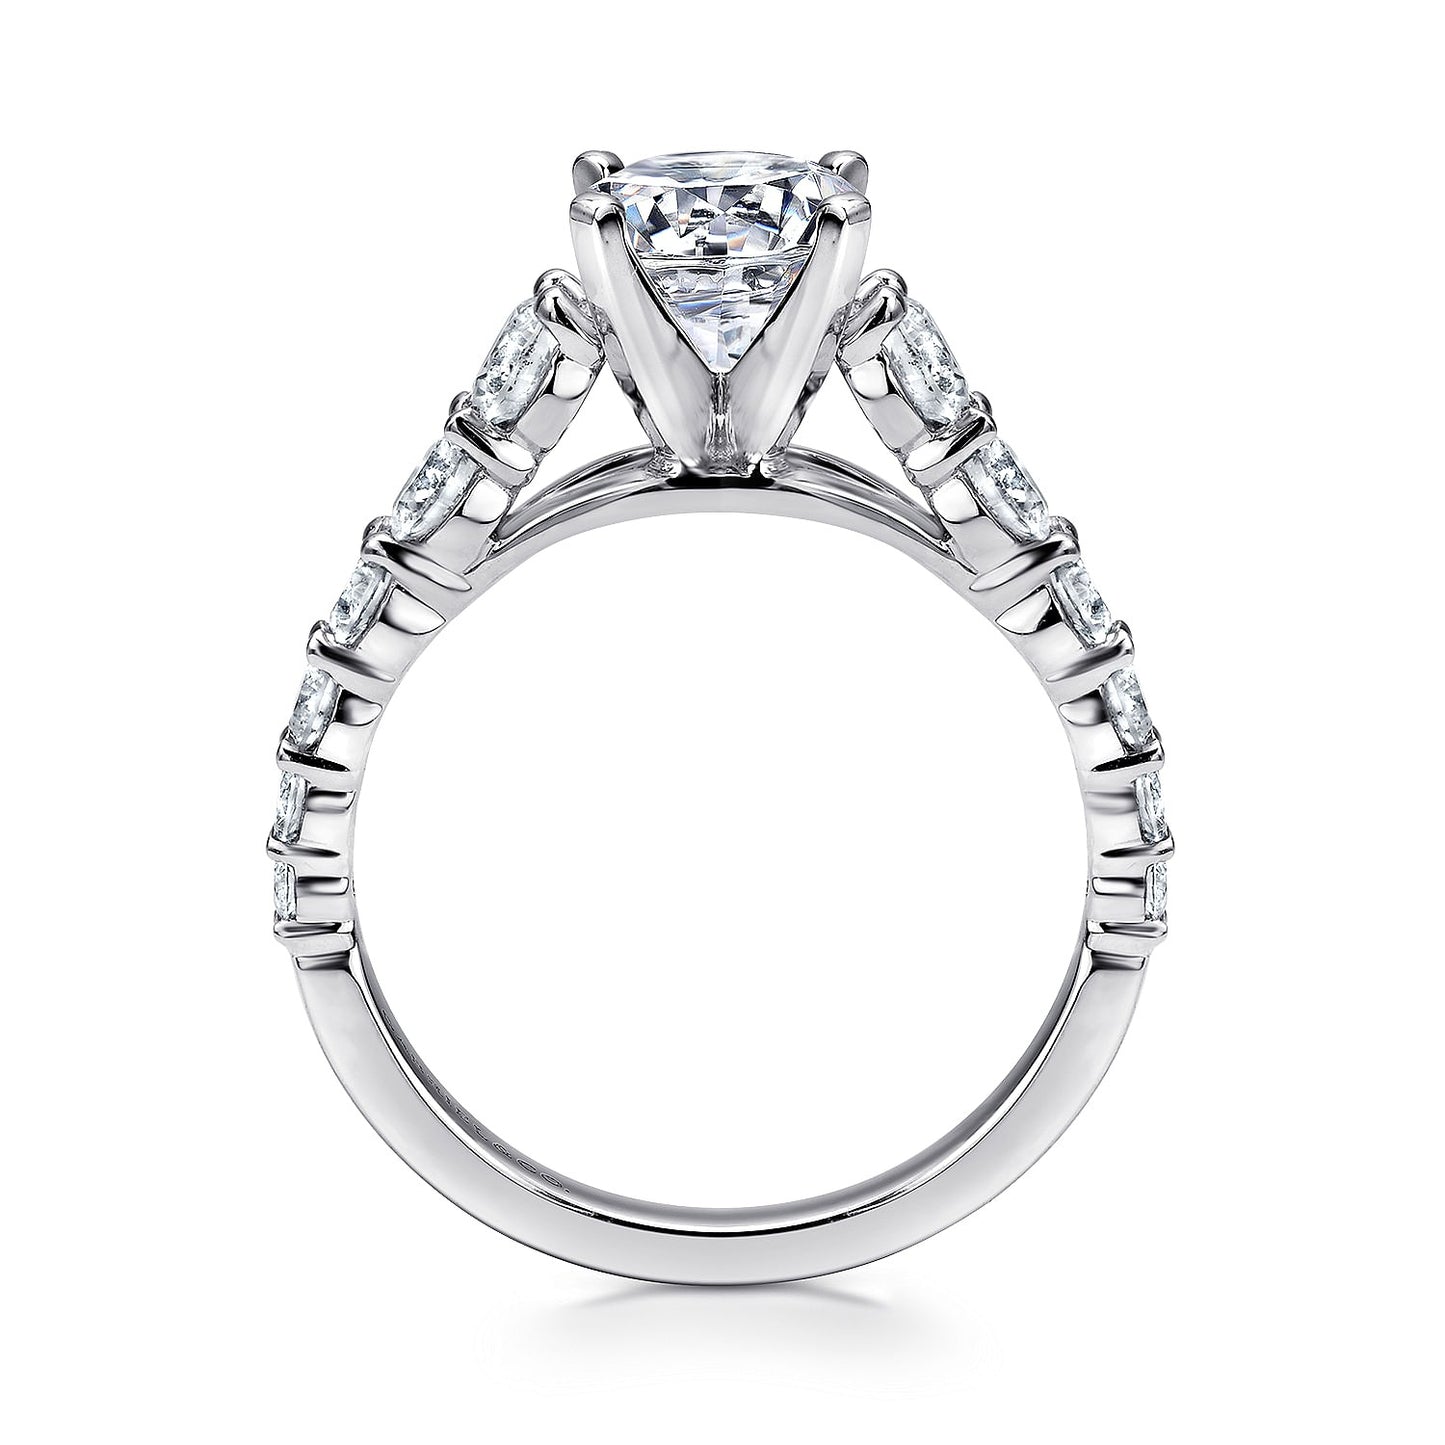 Gabriel & Co. 14 Karat White Gold Diamond Semi-Mount Engagement Ring - Diamond Semi-Mount Rings